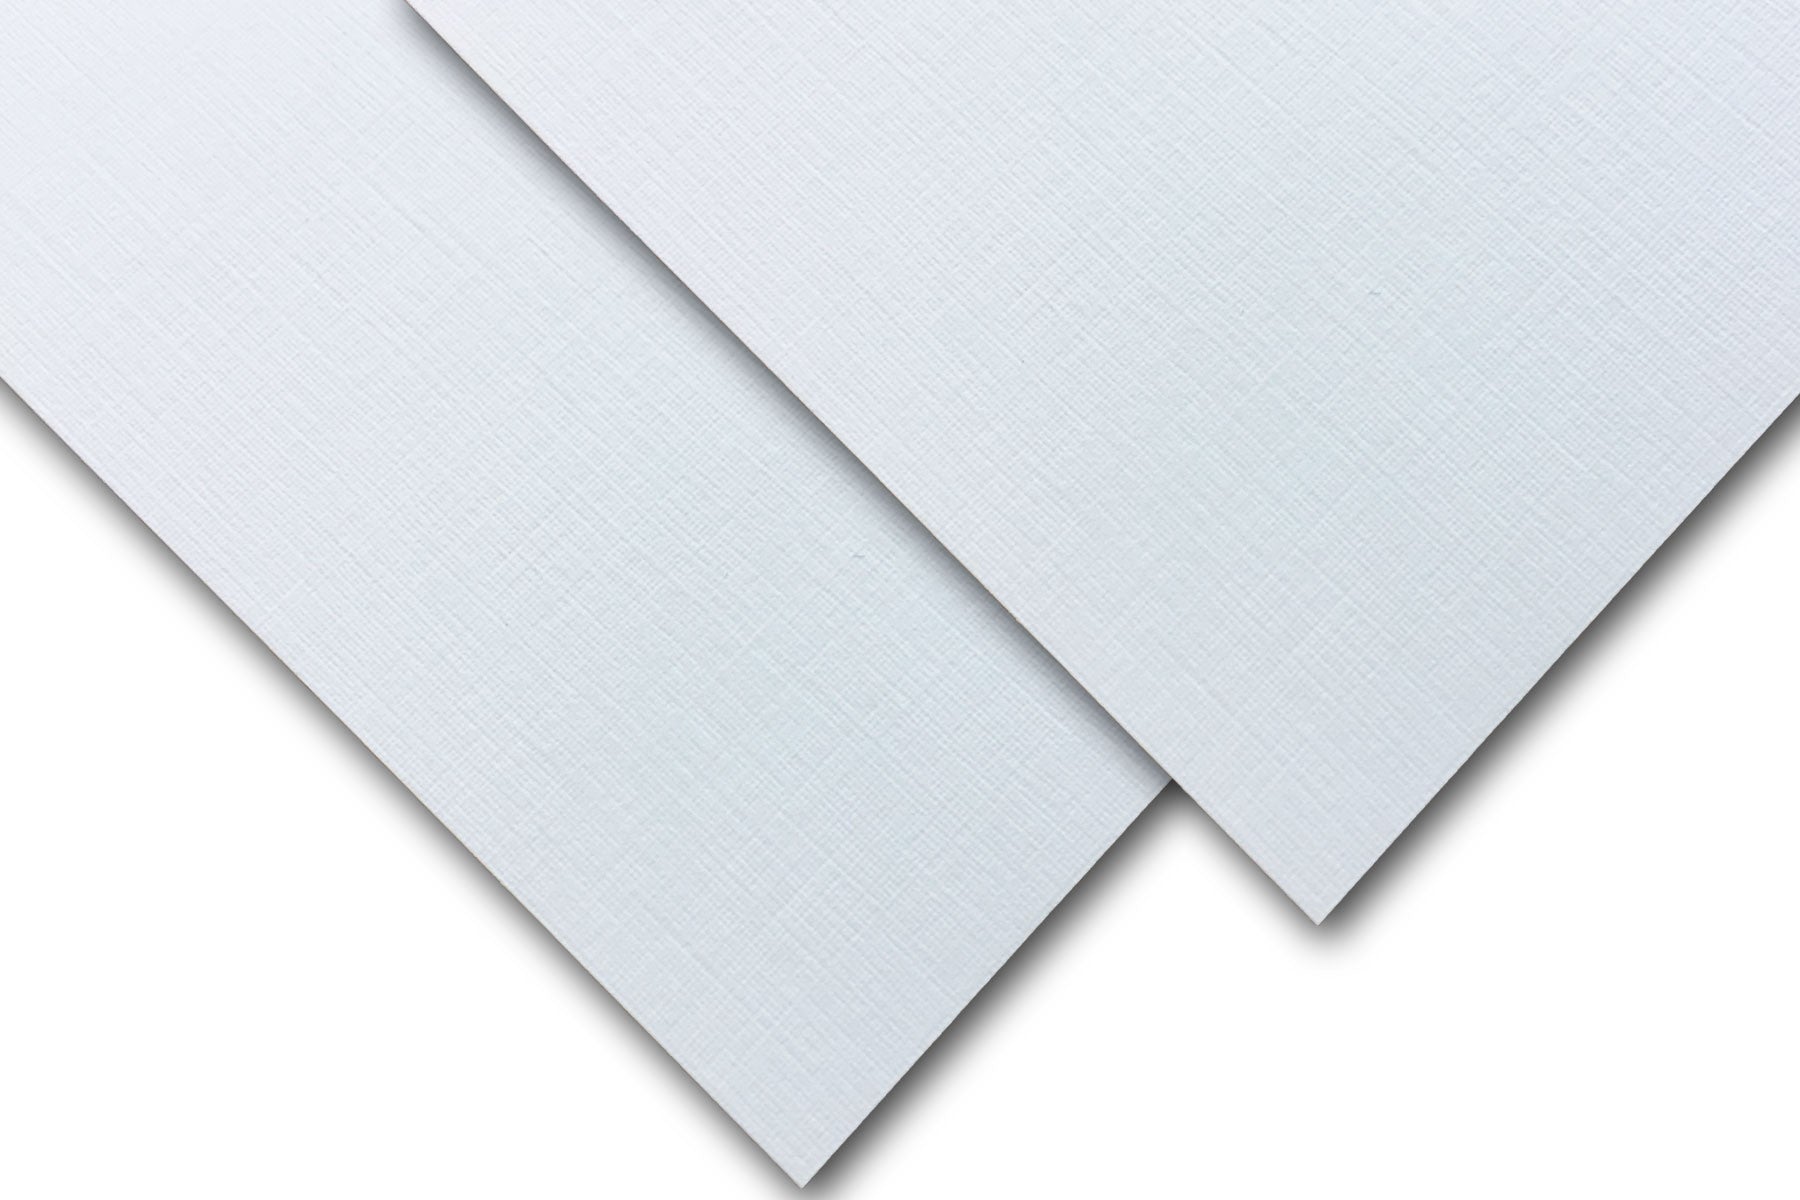 Royal Linen Bright White 80lb/216g Cardstock 8-1/2x11 250/pkg